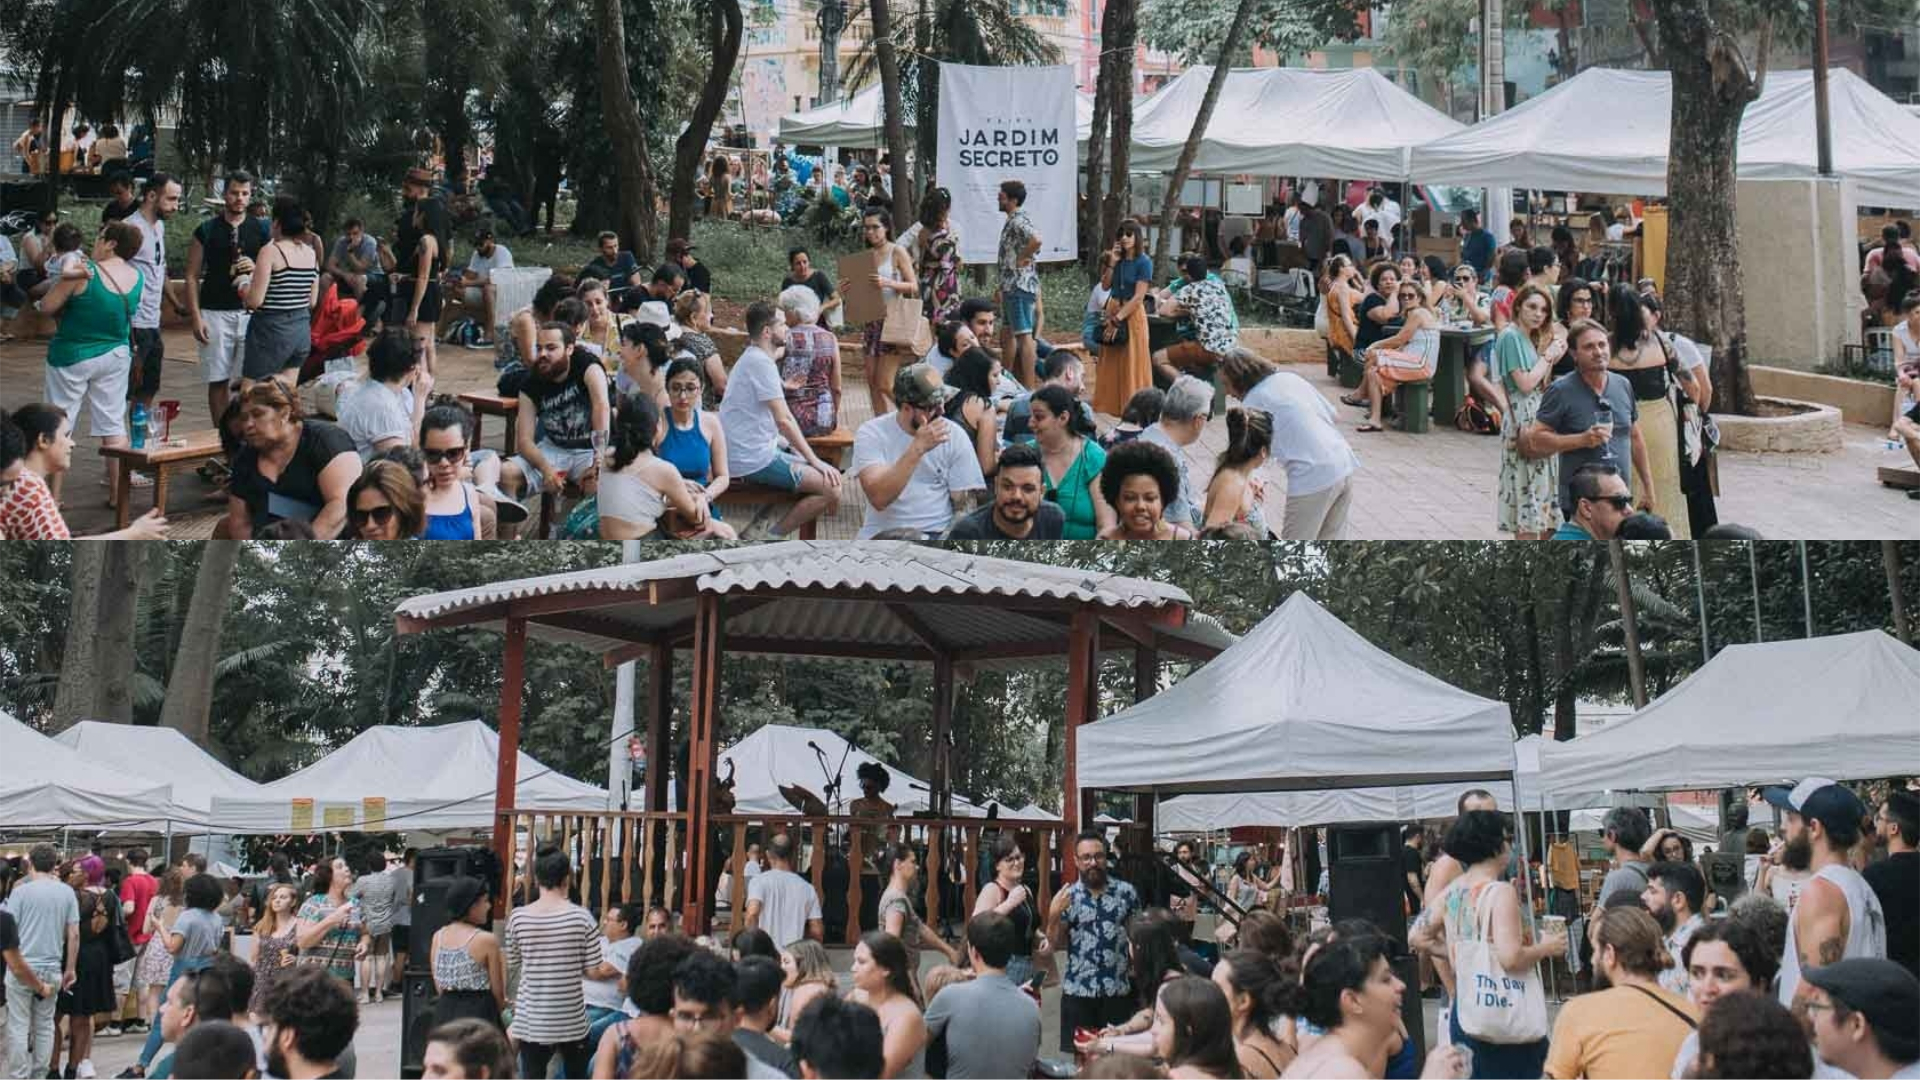 A Feira Jardim Secreto deu nova vida à Praça Dom Orione, no Bixiga, reunindo mais de 200 expositores